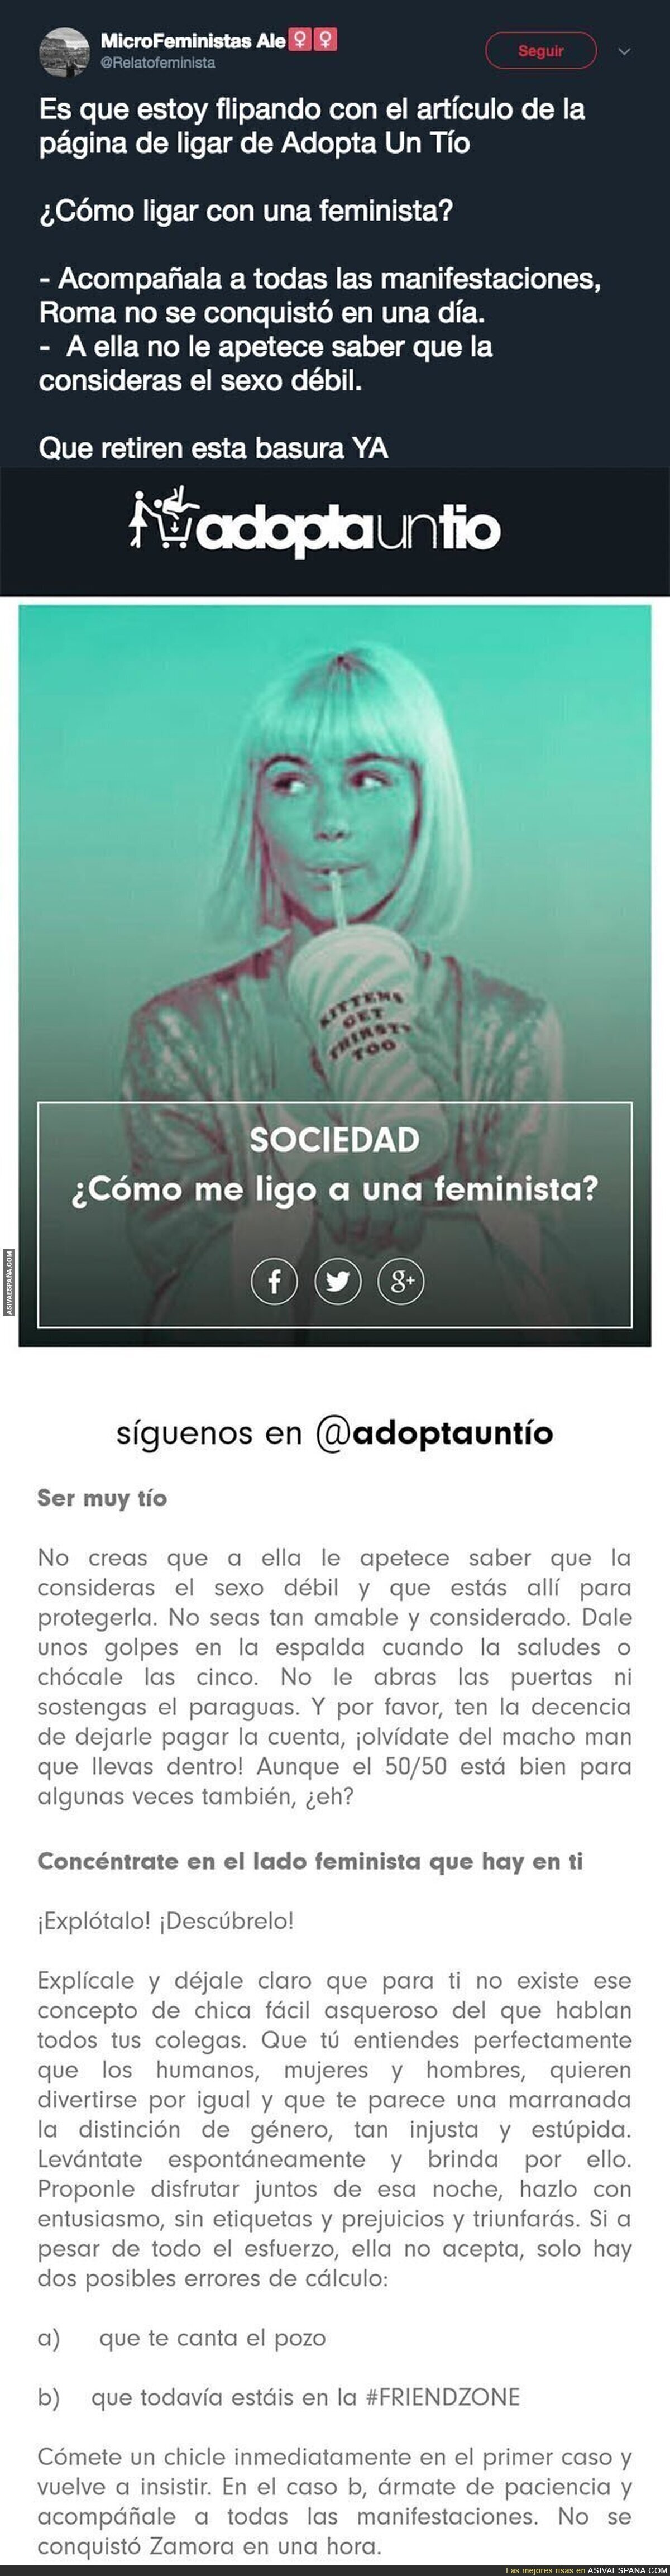 El polémico texto de la web 'adoptauntio' para ligar con feministas